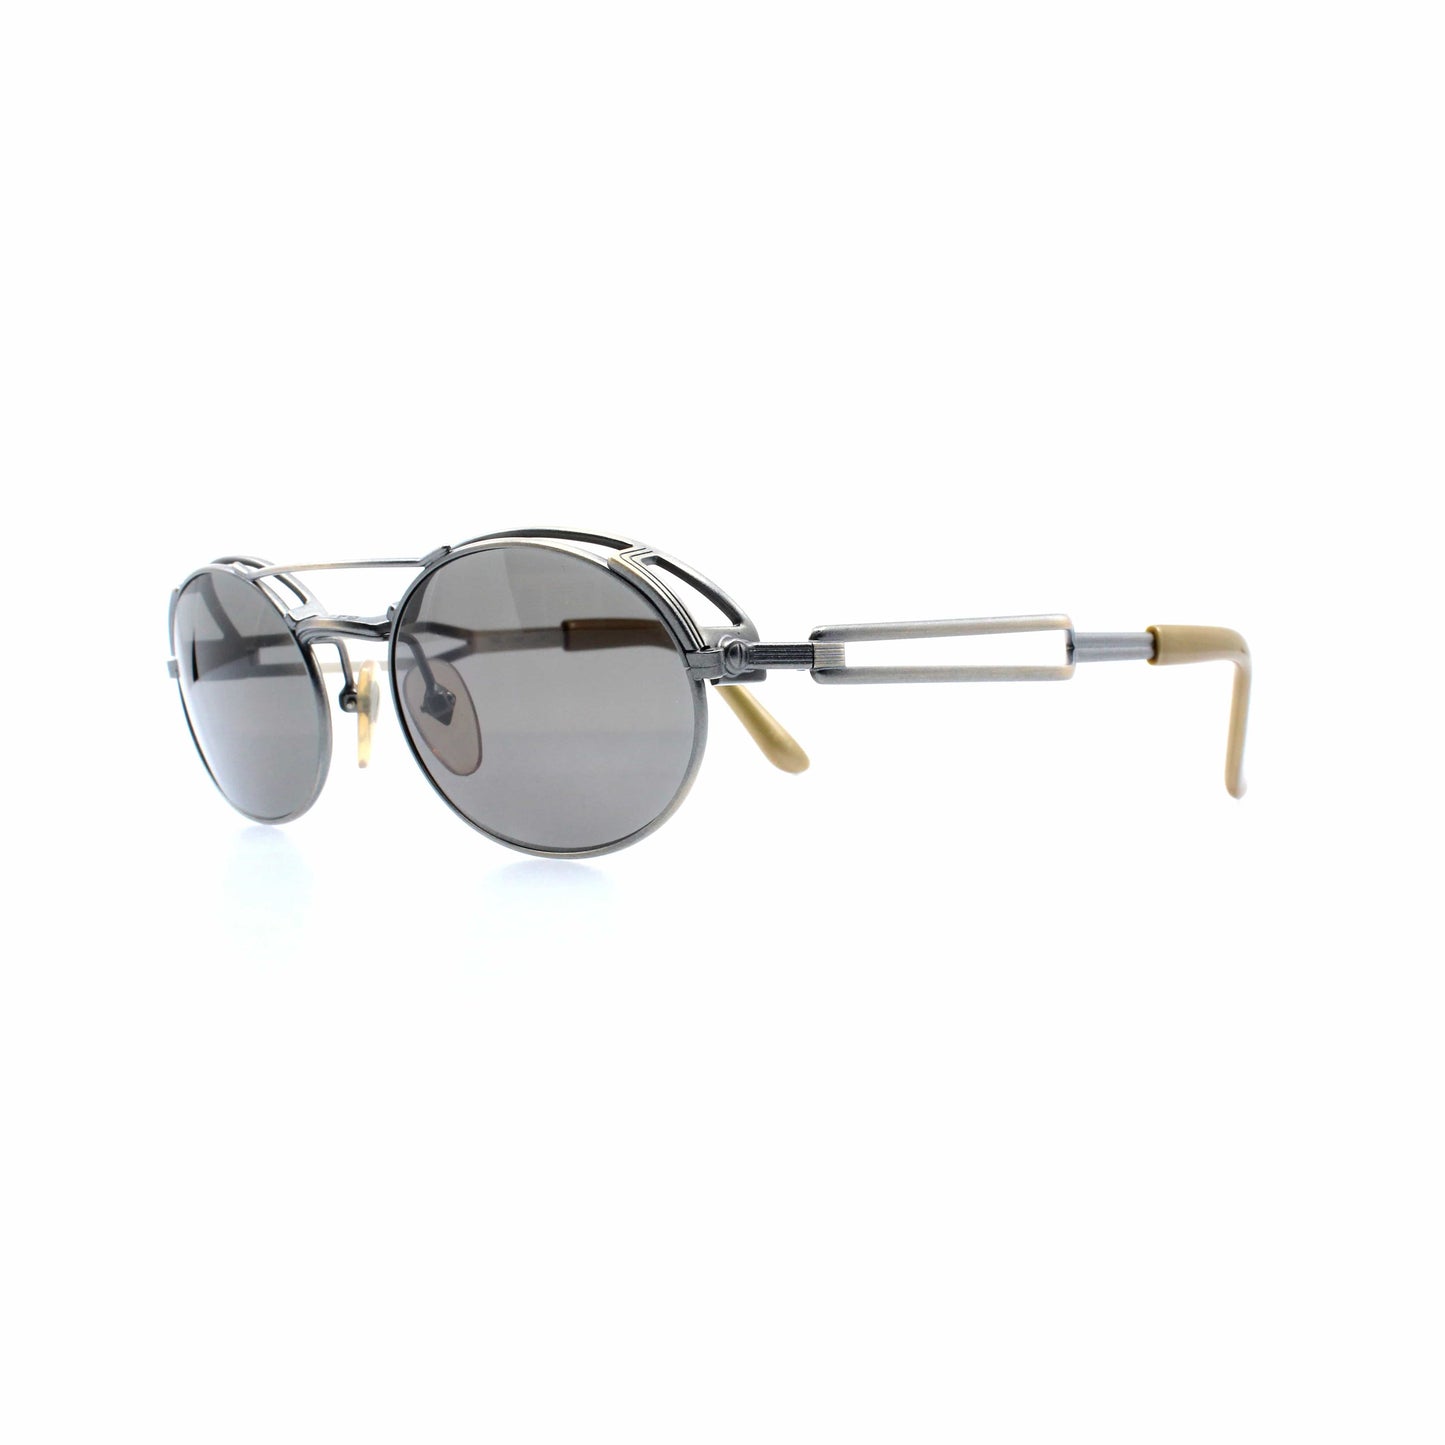 Copper Vintage Jean Paul Gaultier 56-7107 Sunglasses RSTKD Vintage